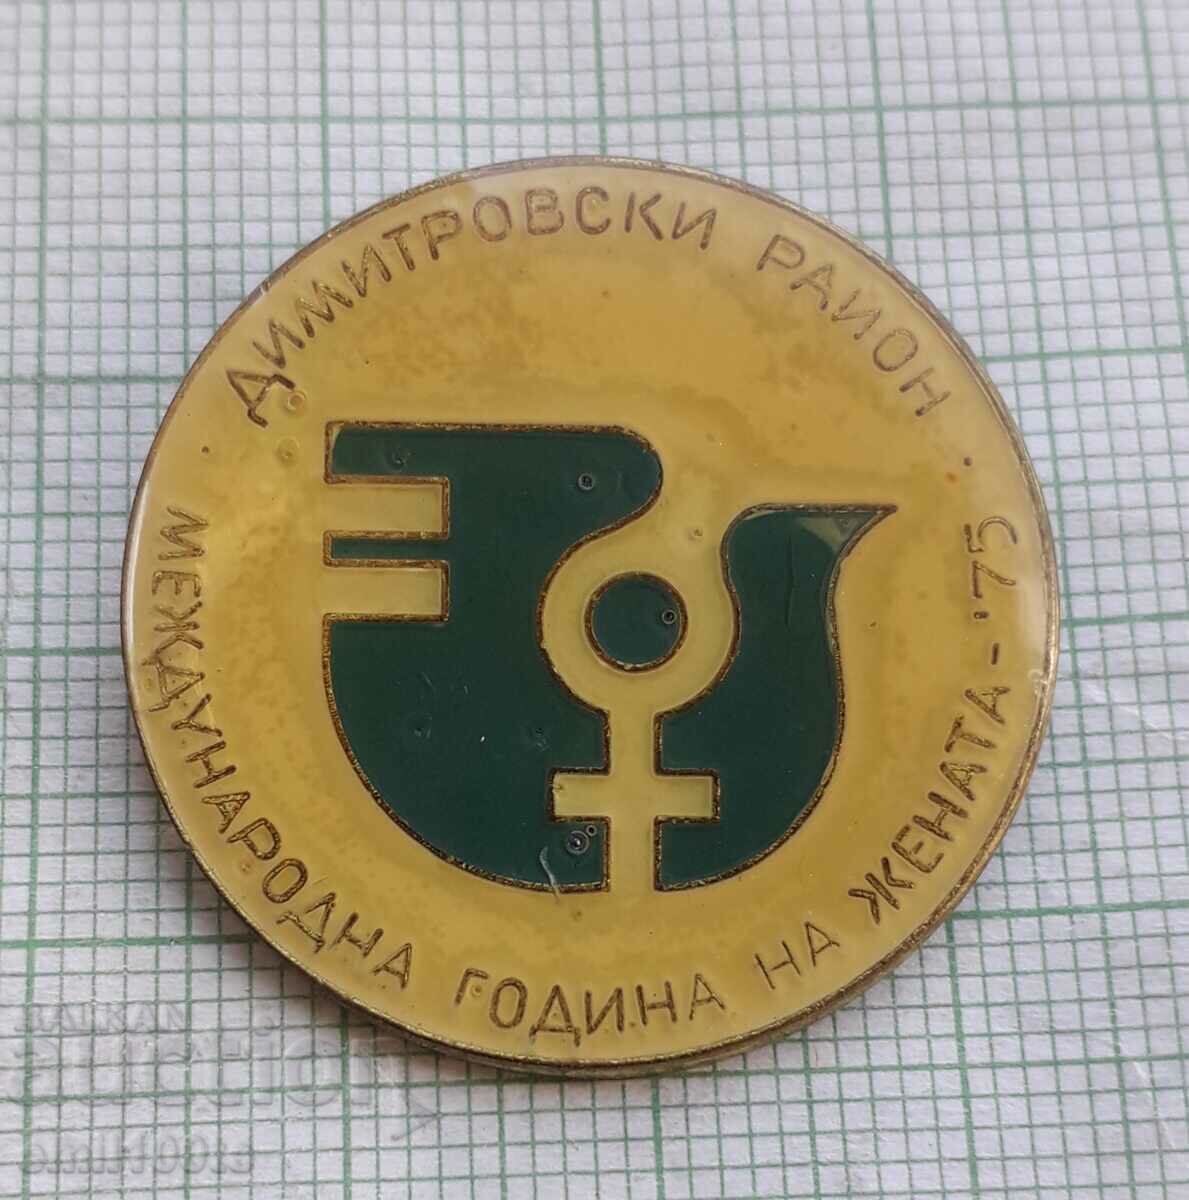 Insigna - Anul Internațional al Femeii, Regiunea Dimitrovsk